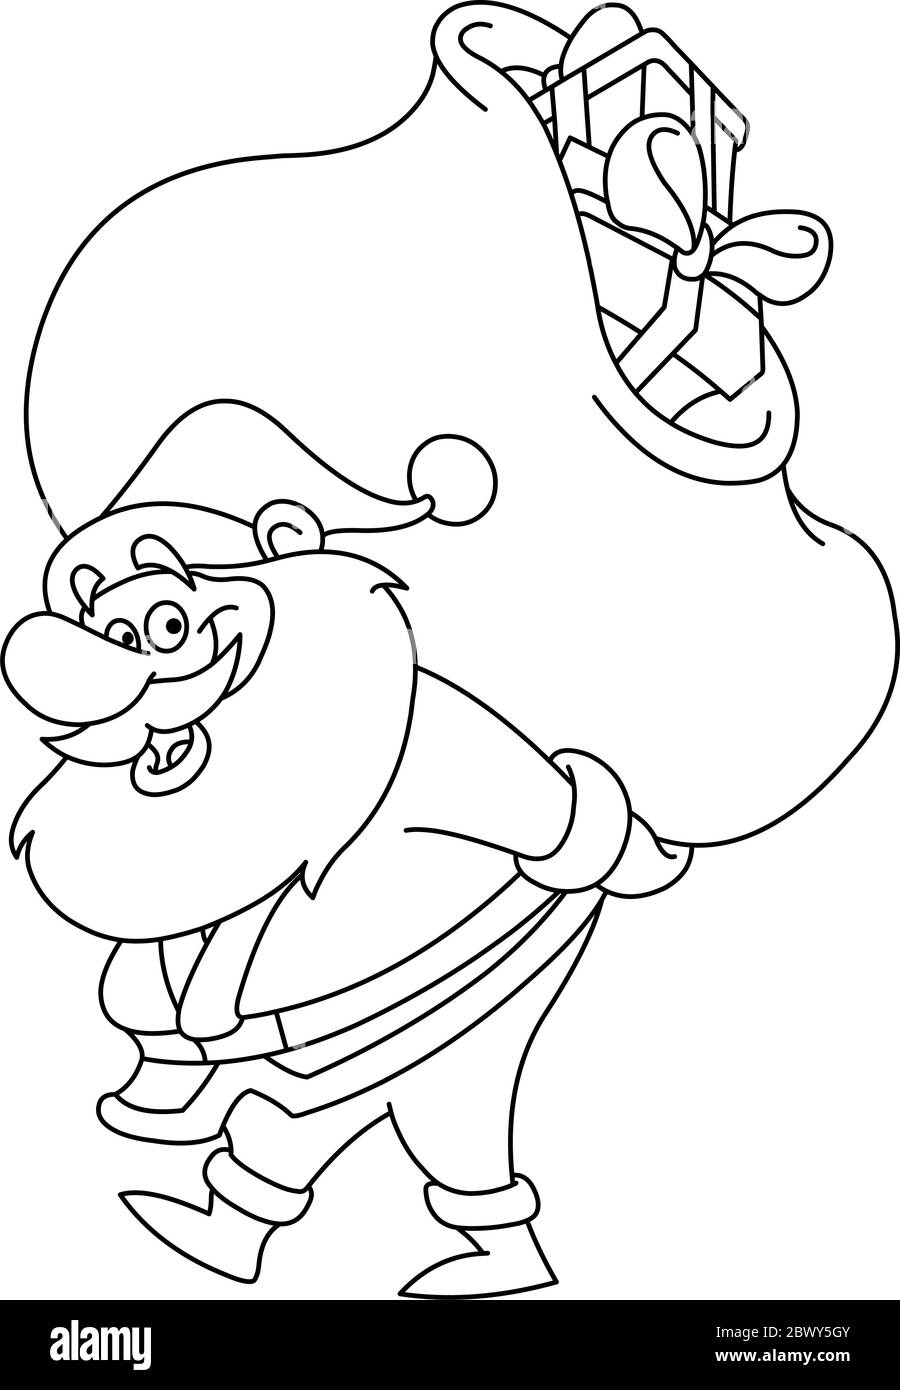 Skizziert Weihnachtsmann mit einem großen Geschenken Sack auf dem Rücken. Vektorgrafik Malseite. Stock Vektor